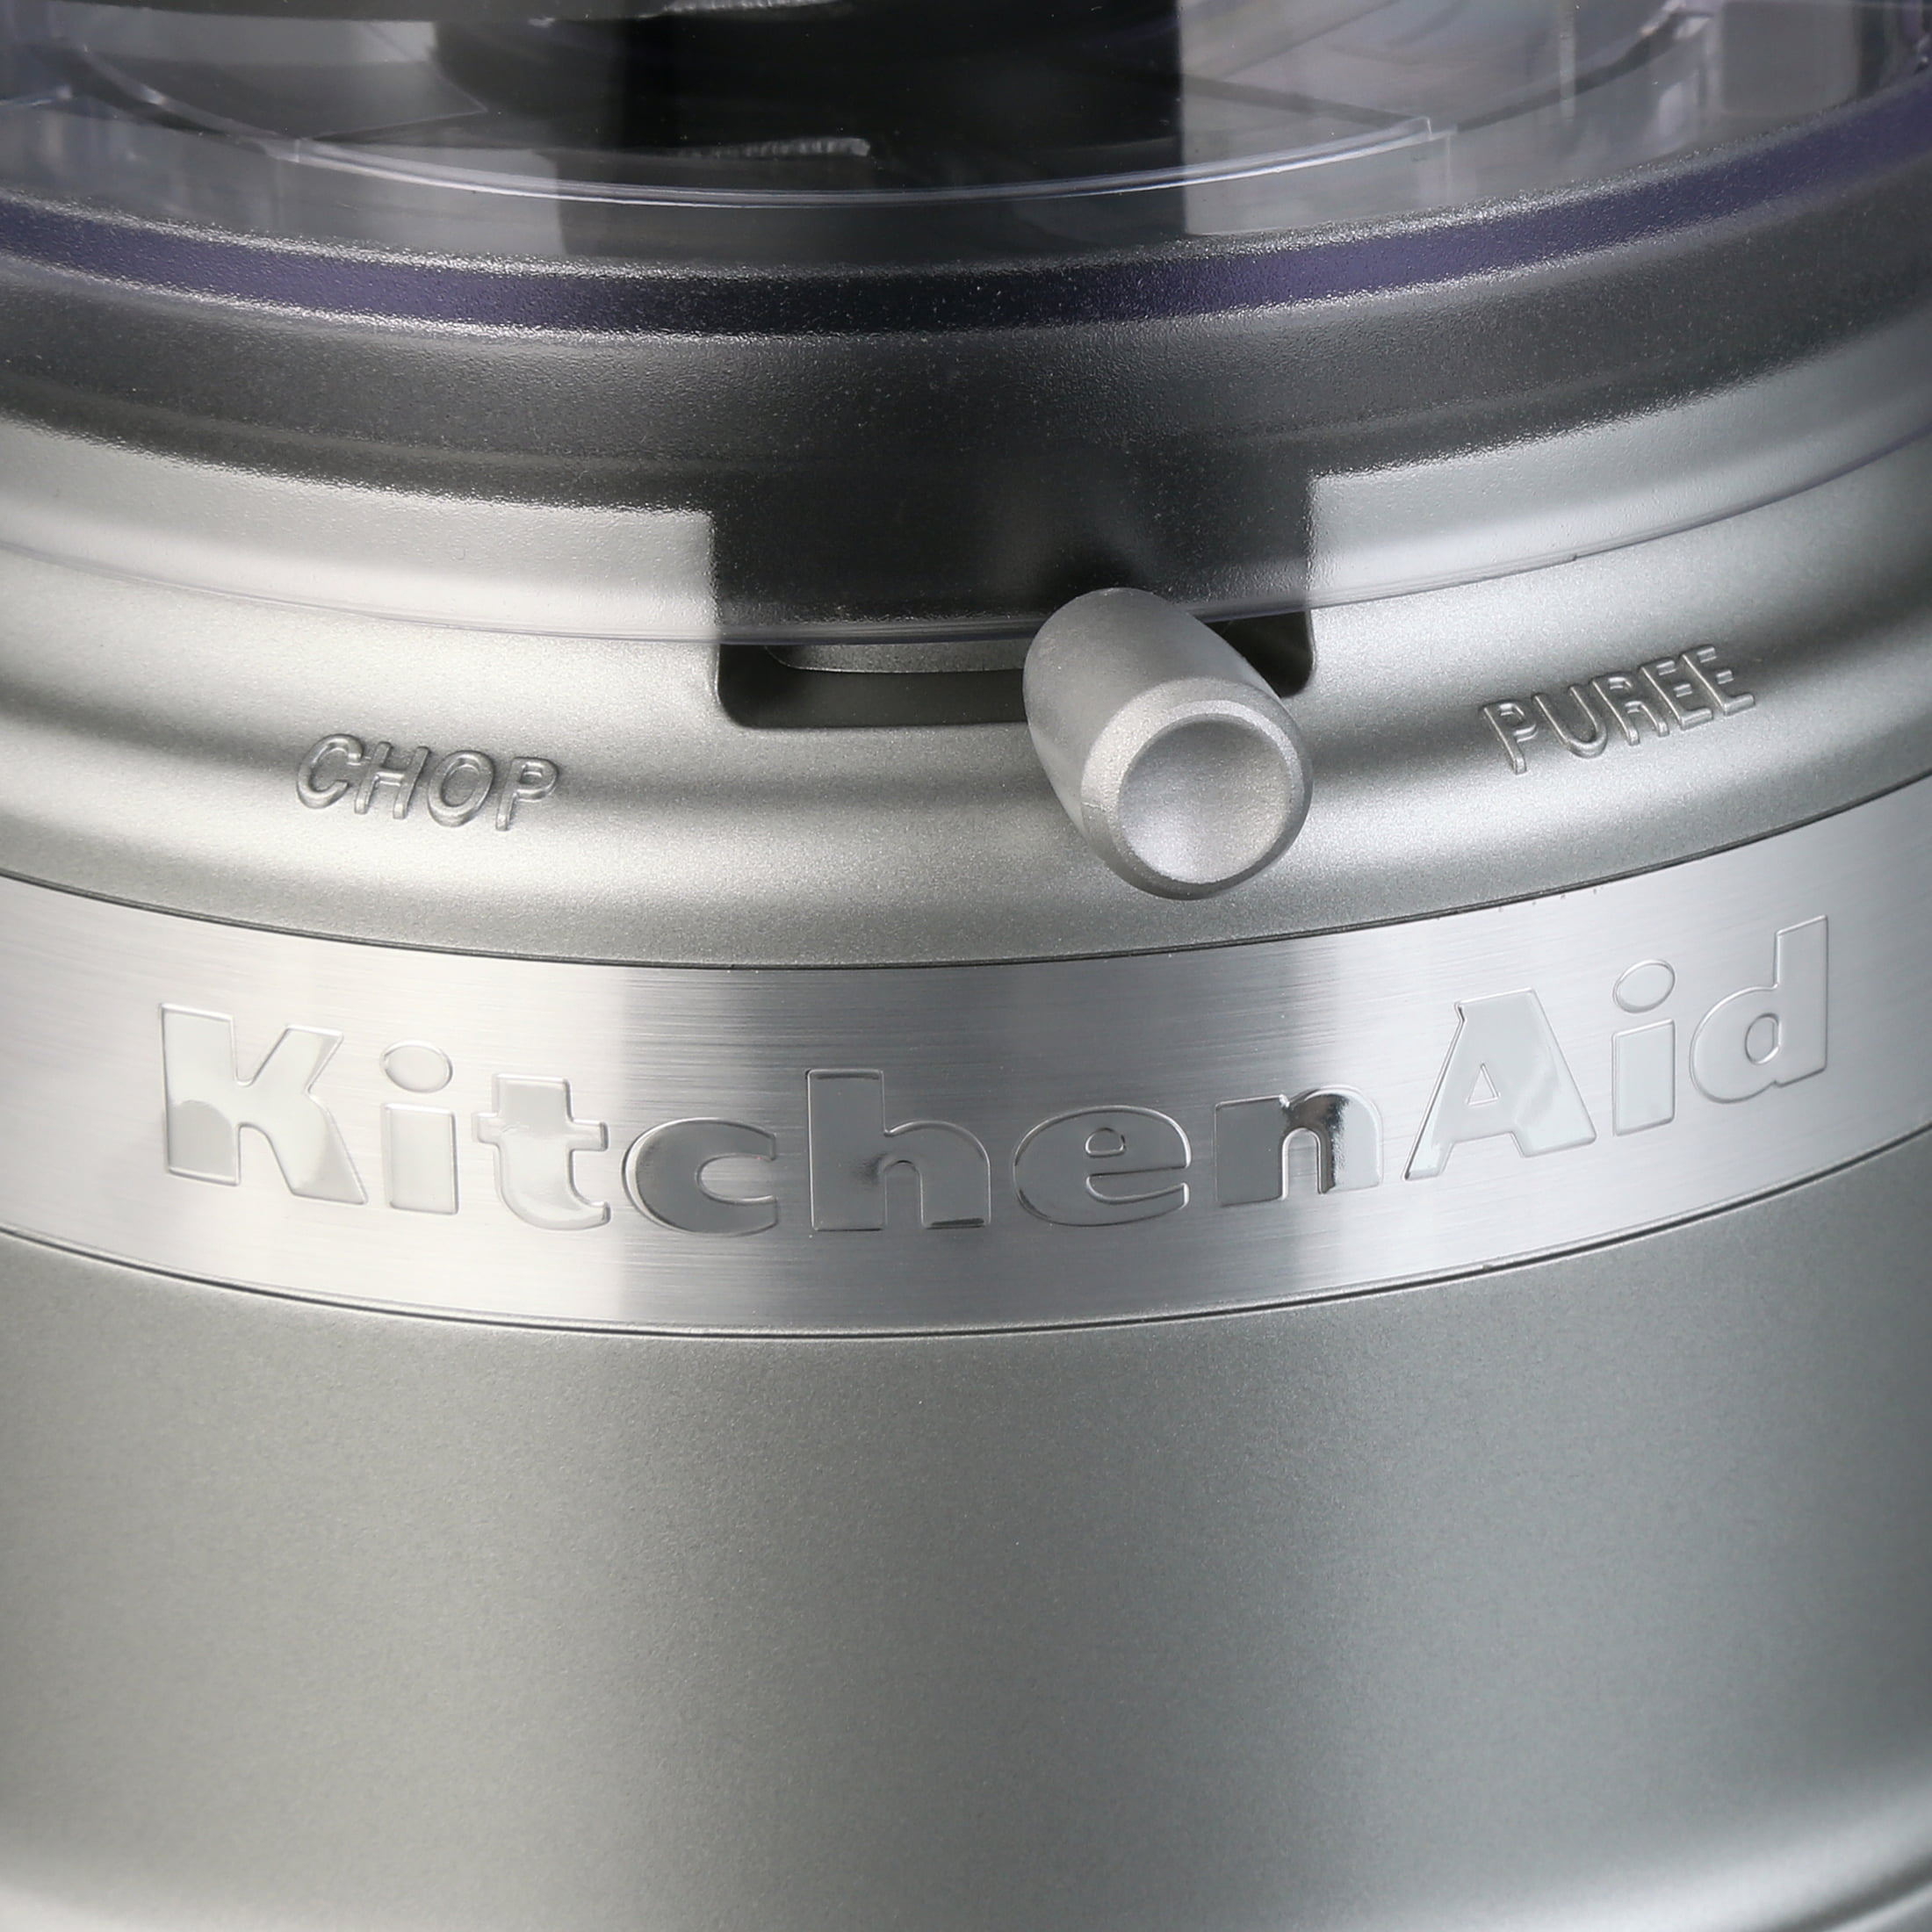 KitchenAid 3.5 Cup Food Chopper - KFC3510